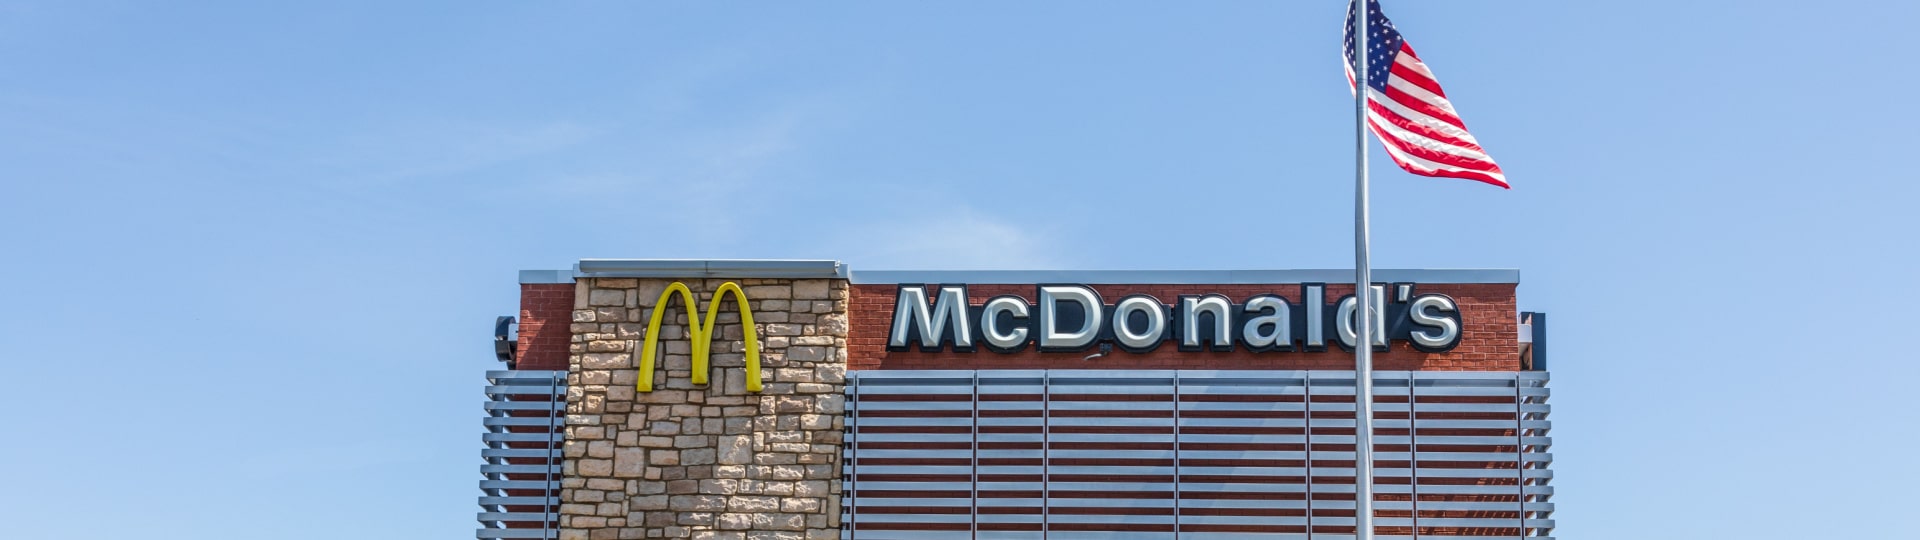 McDonald's zvyšuje poplatek za provoz nových franšízových poboček v USA